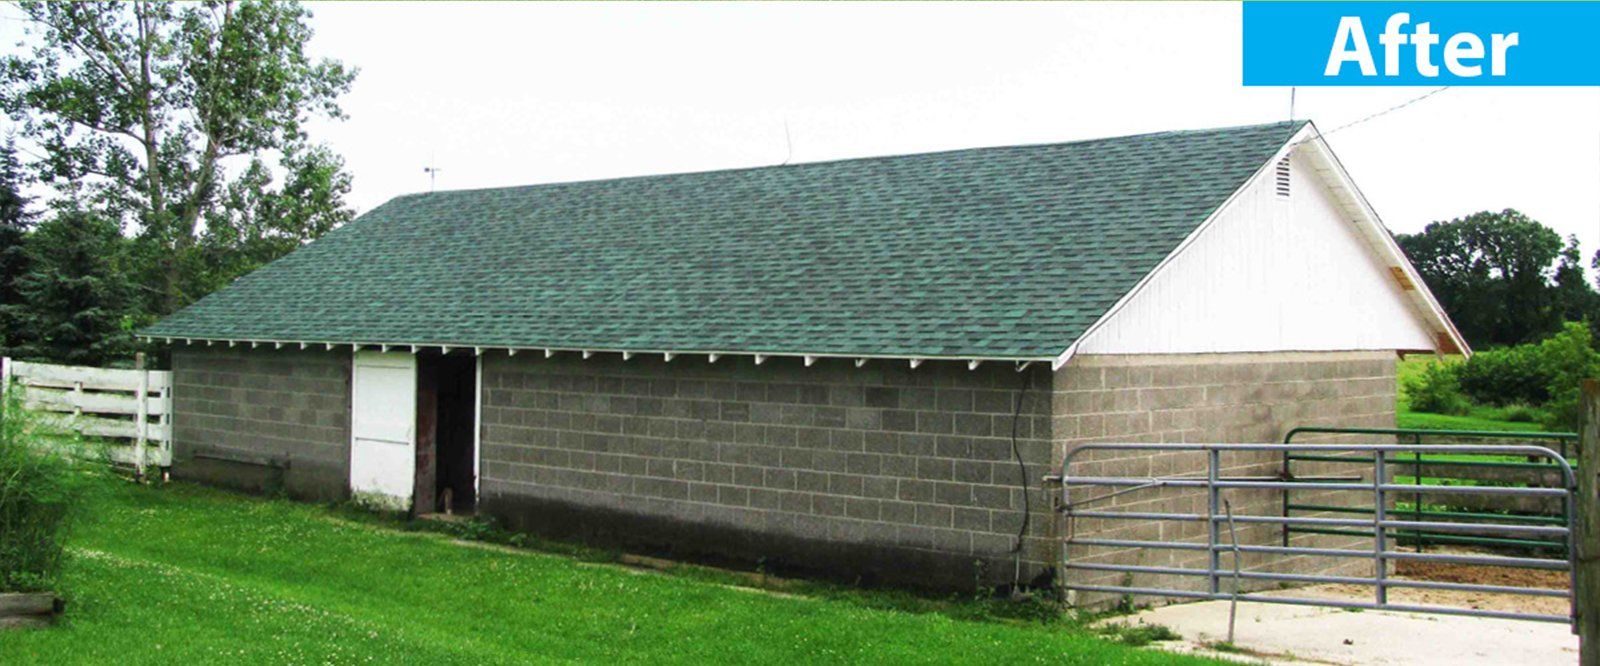 After Farm Re-Roof — Burlington, WI — Mather’s Improvement Service LTD